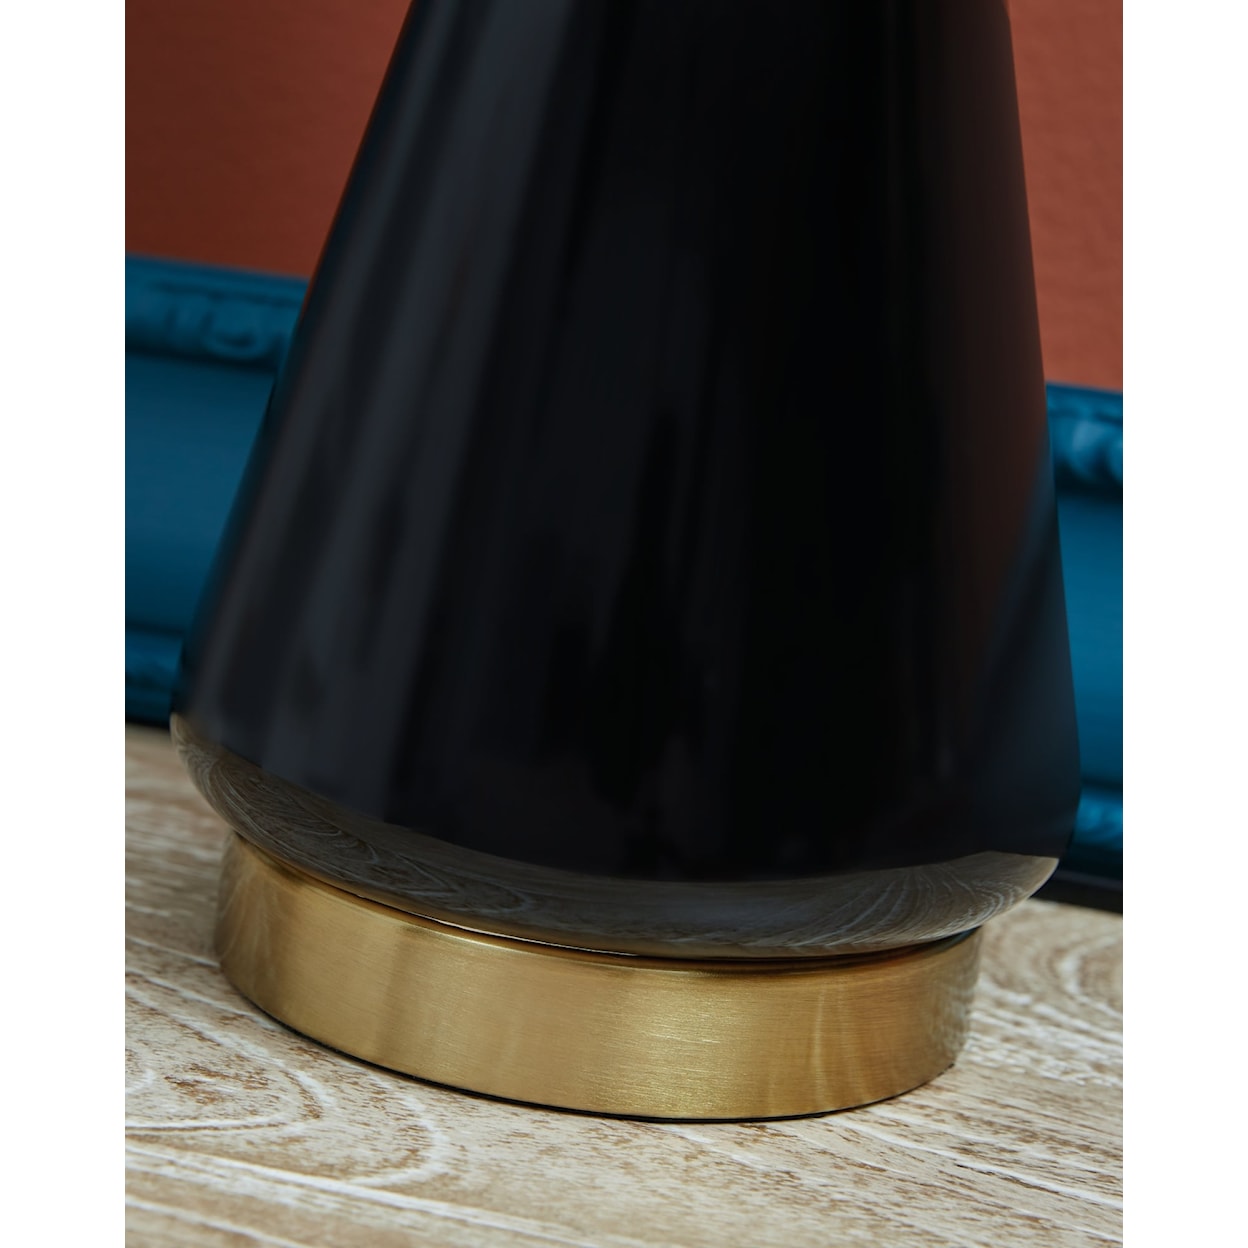 Ashley Signature Design Ackson Ceramic Table Lamp (Set of 2)